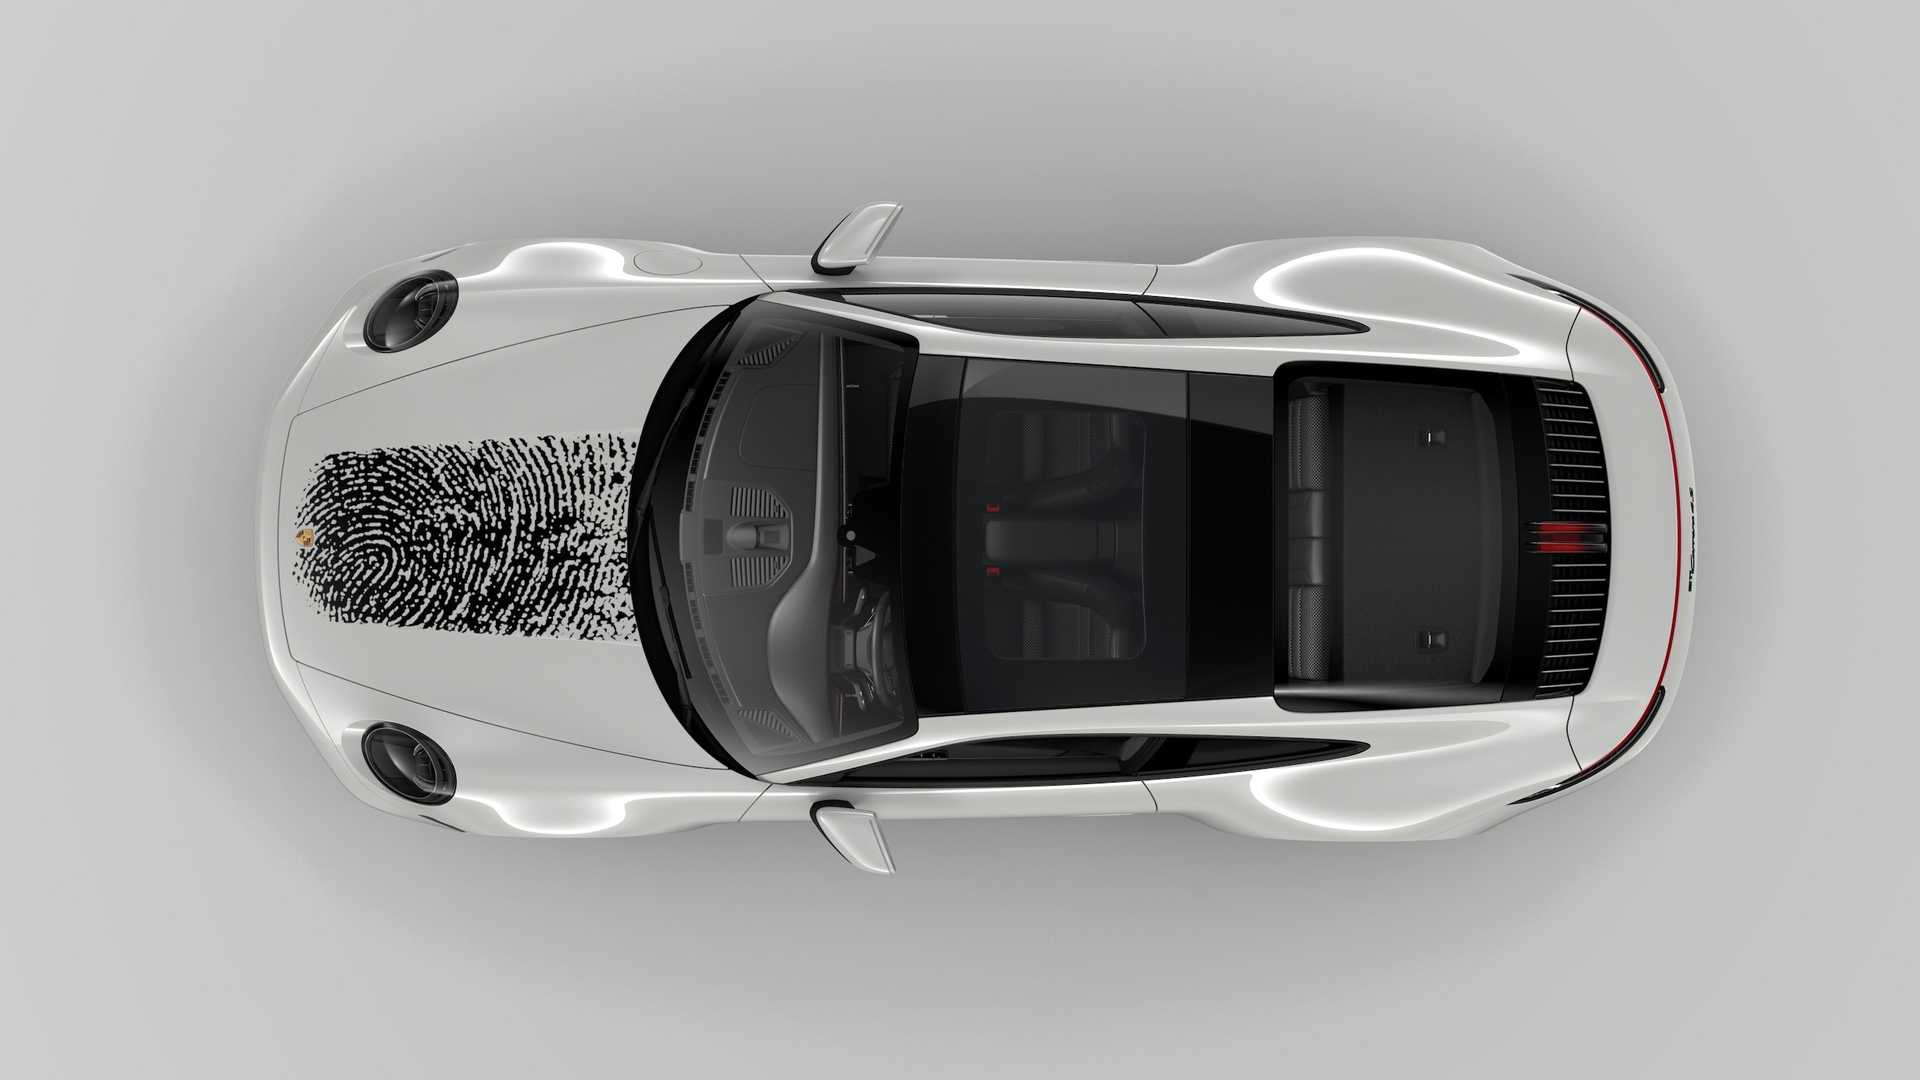 Đỉnh cao ‘móc túi’ người dùng: In vân tay lên nắp capo Porsche 911 mất gần 200 triệu đồng để khẳng định chủ quyền - Ảnh 4.